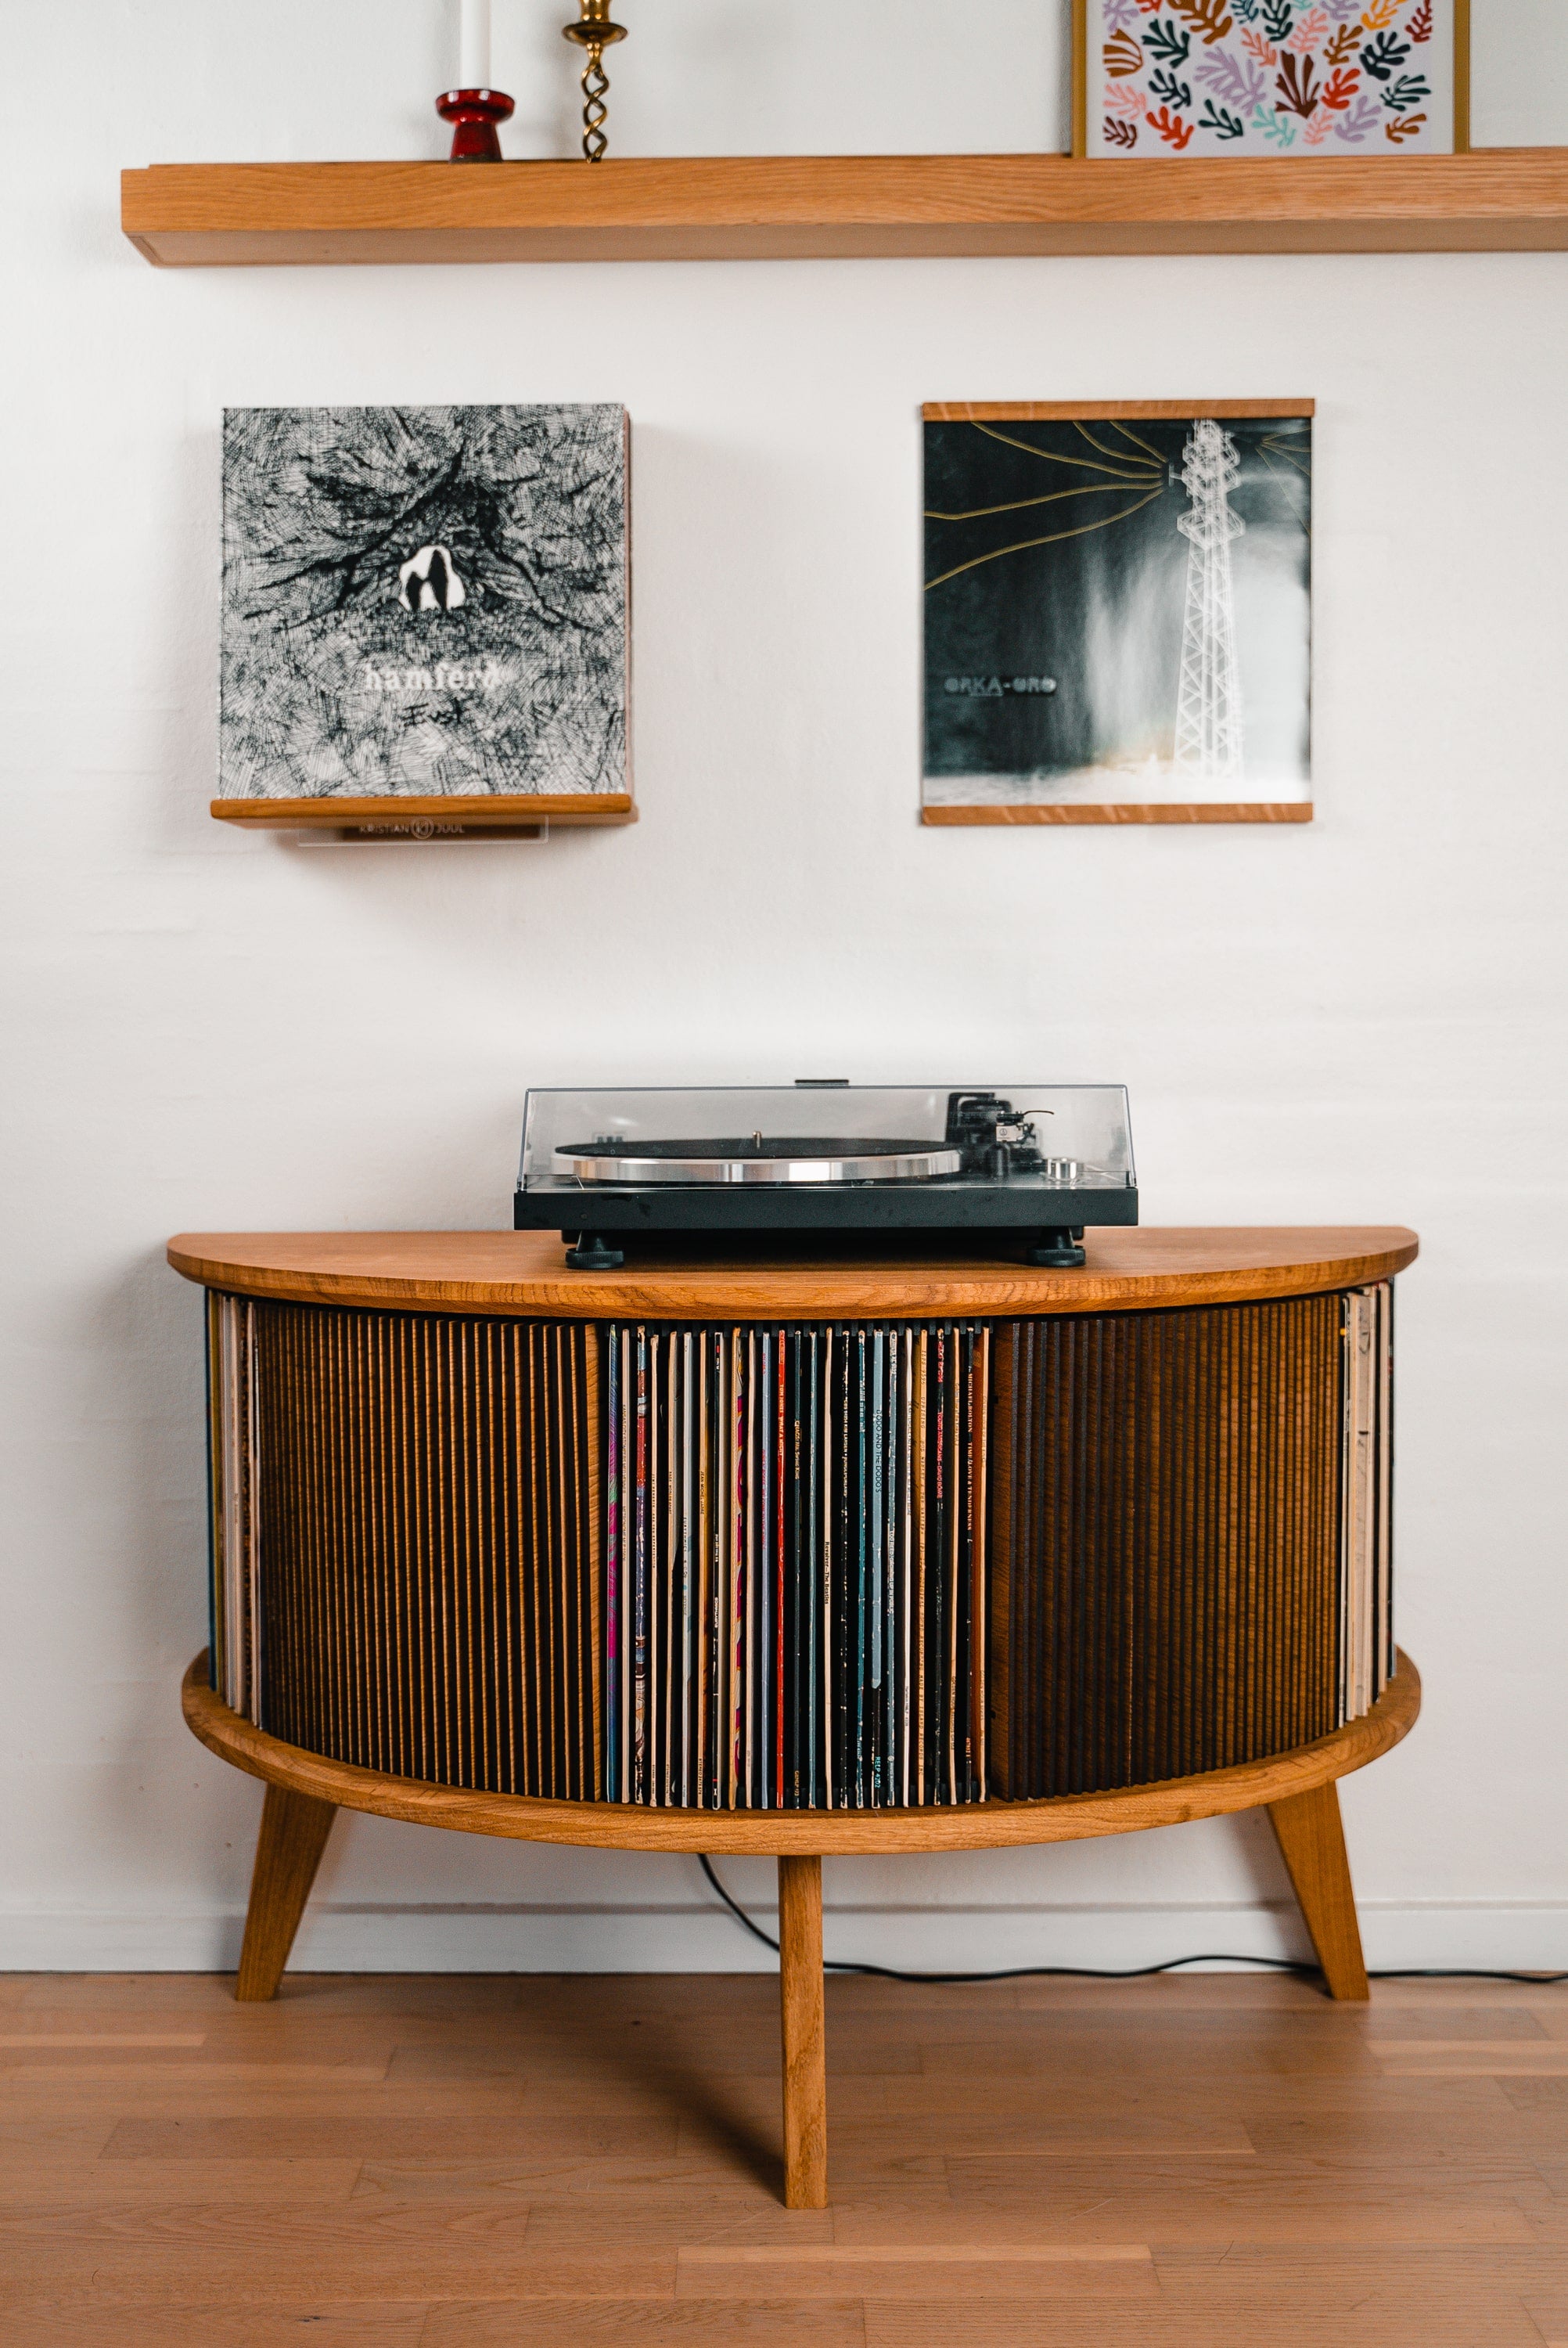 Vinylmøbel display Luna med vinyler i og en pladeafspiller stående på